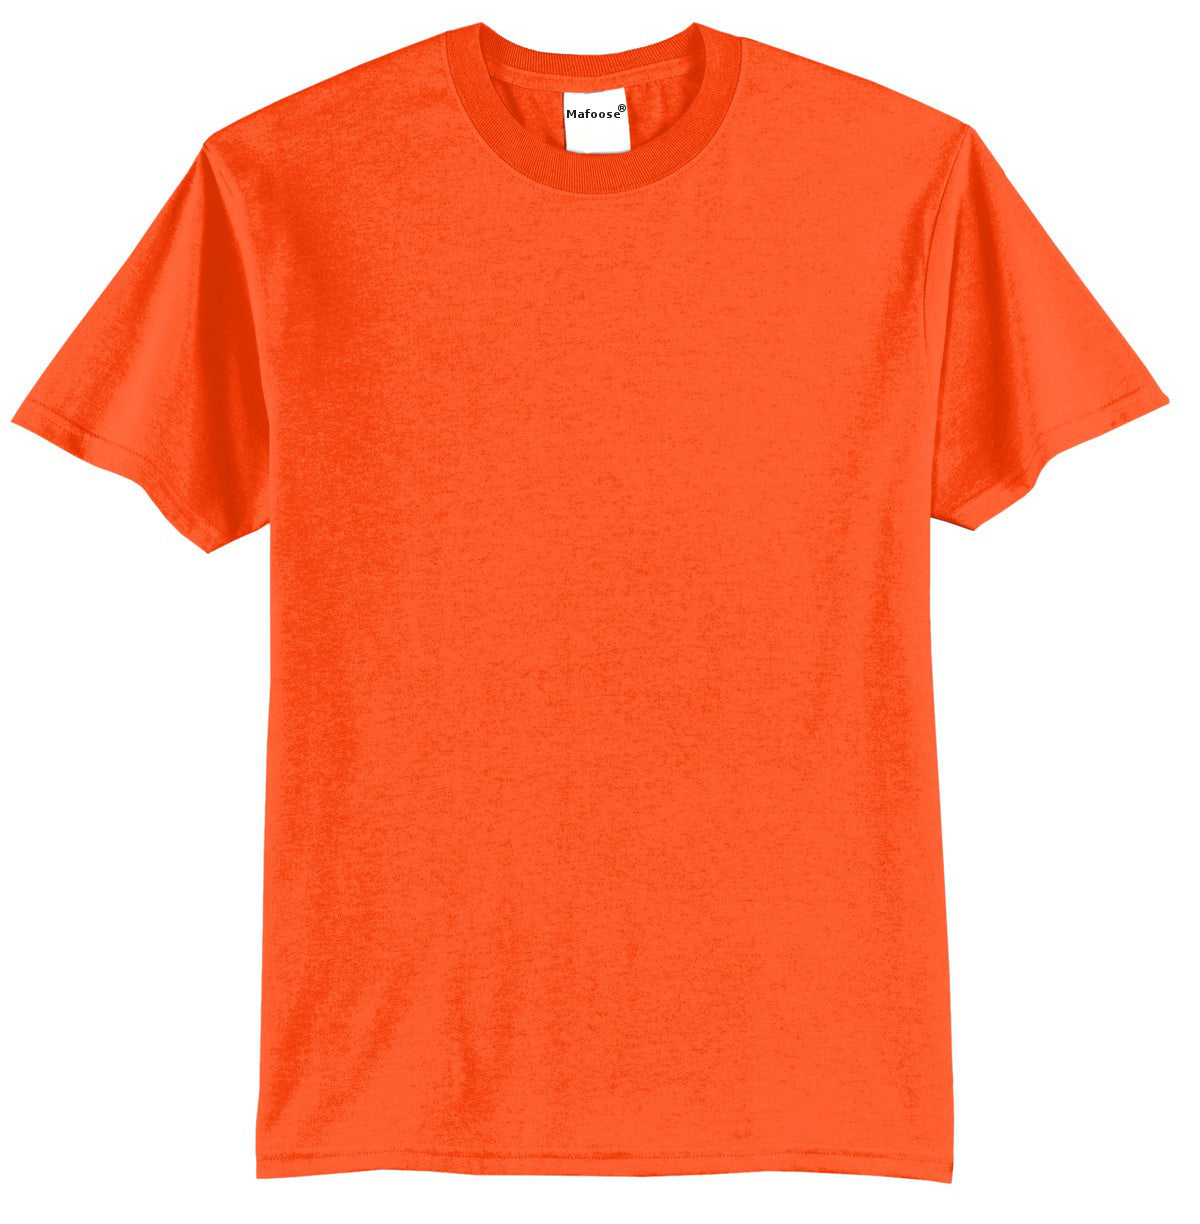 Mafoose Men's Core Blend Tee Shirt Safety Orange